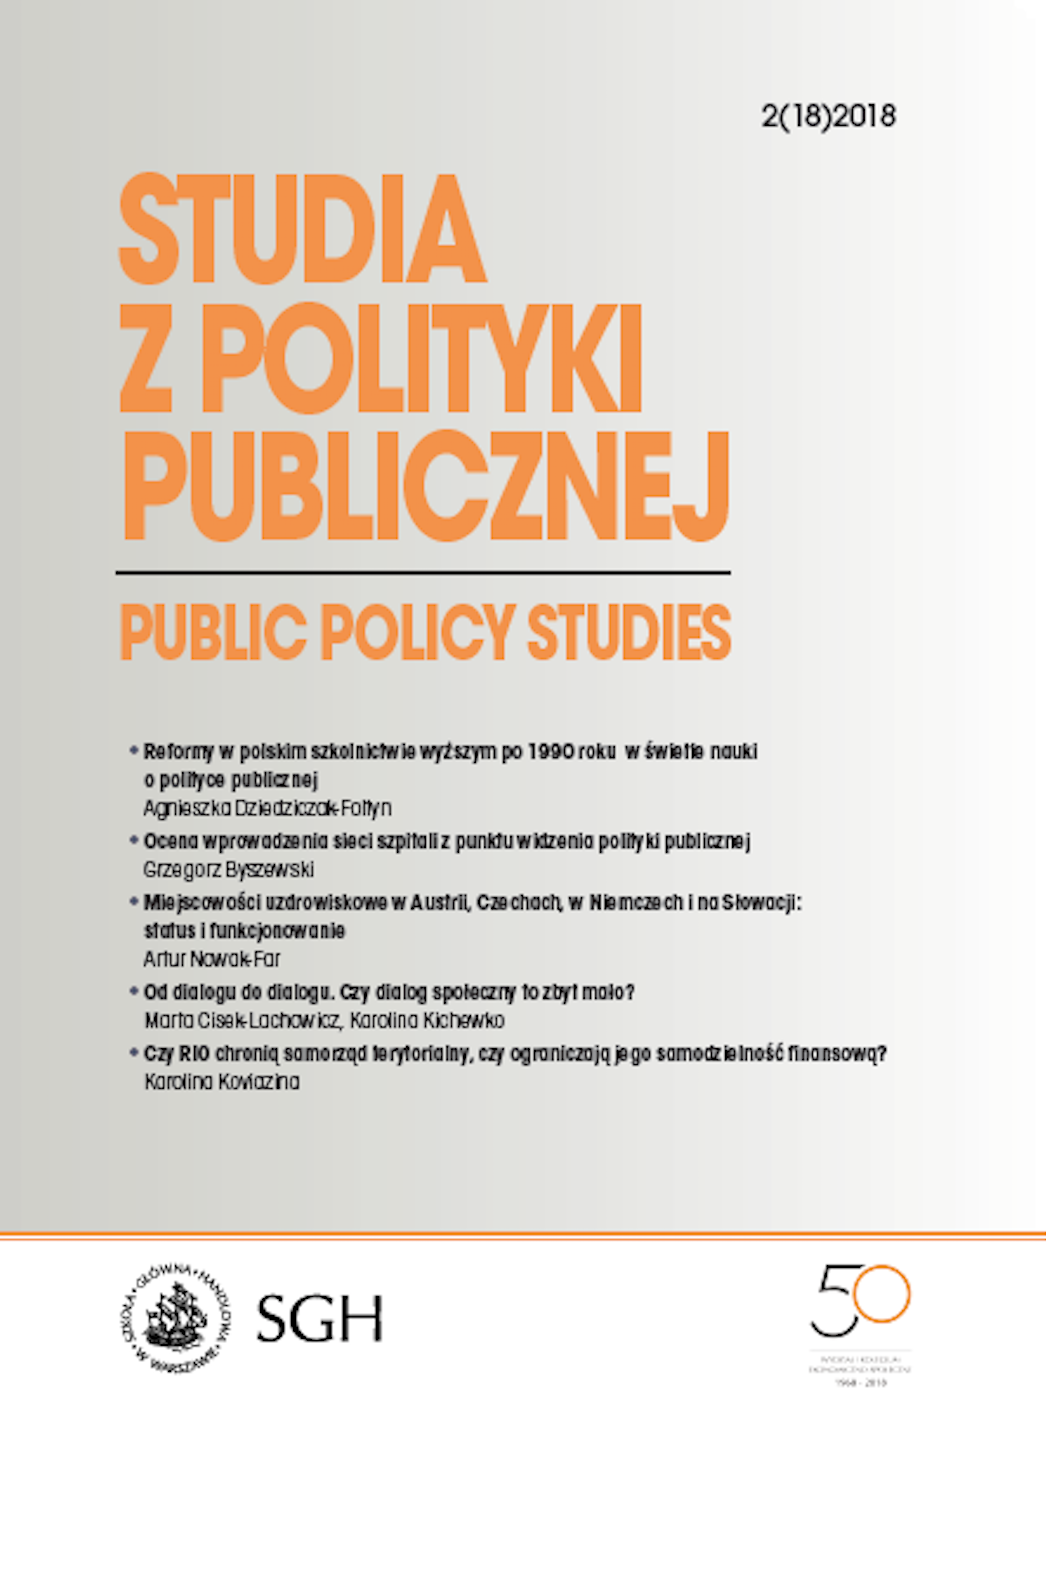 Pozycja ustrojowa samorządu gospodarczego w Polsce